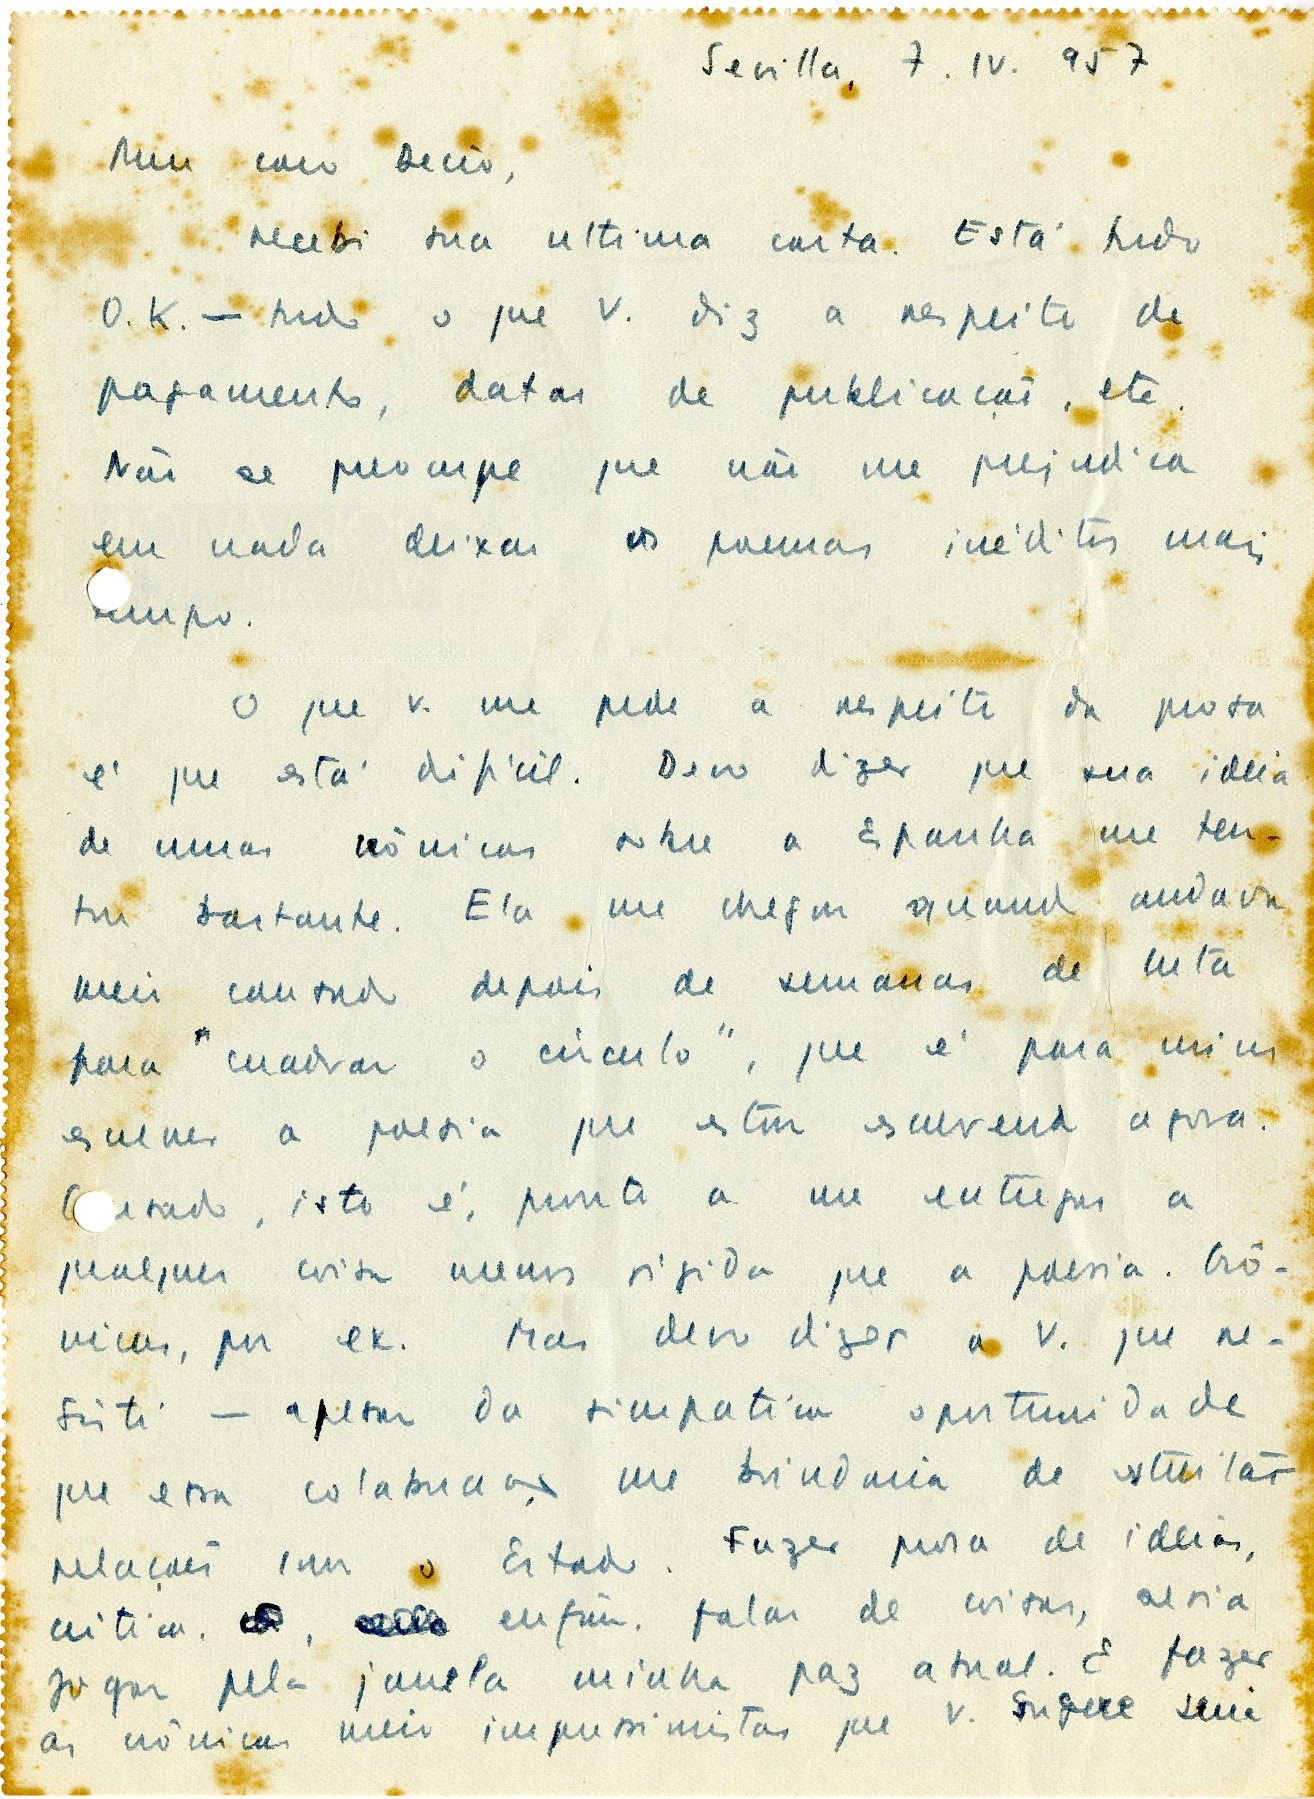 Carta de João Cabral de Melo Neto a Decio de Almeida Prado, 7 de abril de 1957. Arquivo Decio de Almeida Prado / Acervo IMS